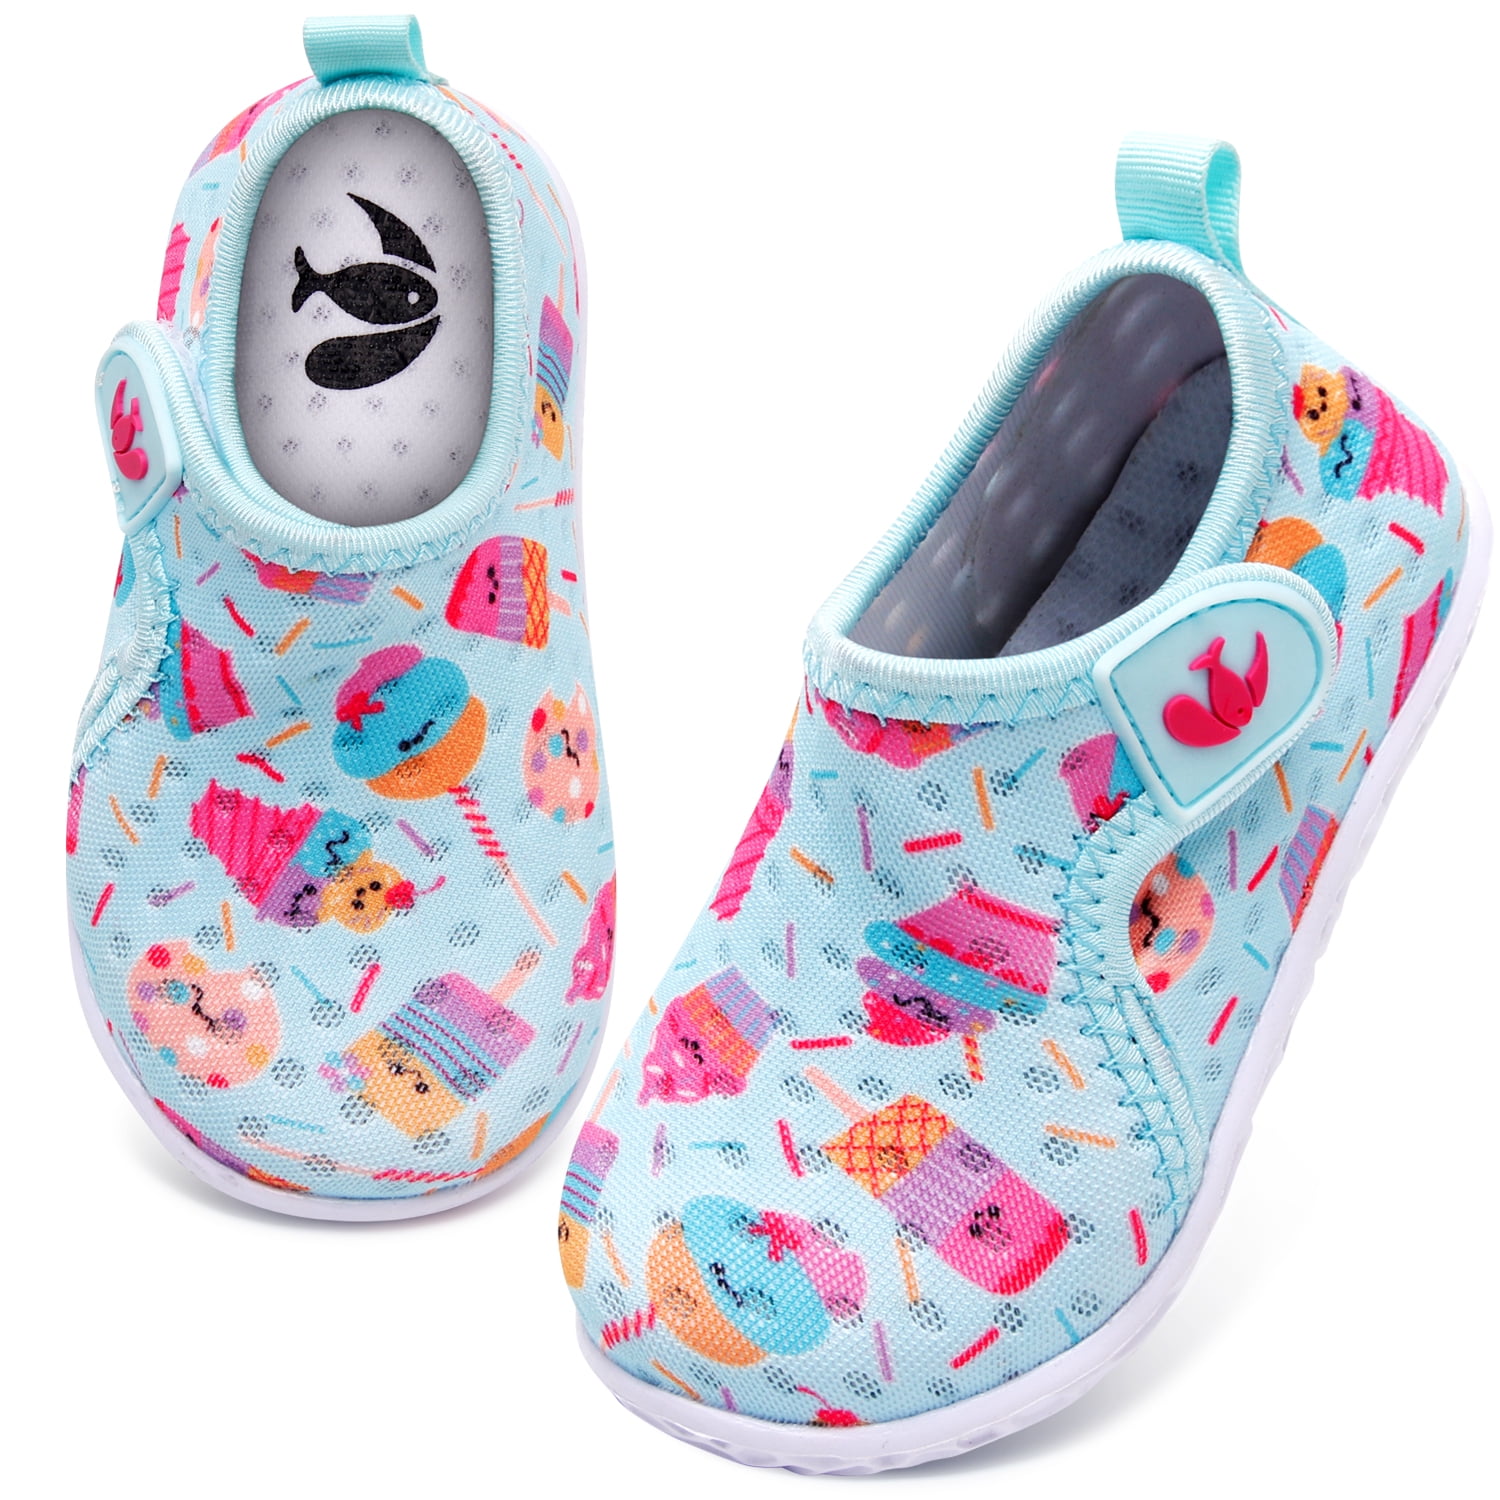 JIASUQI Kids Boys Girls Water Shoes Quick Dry Aqua Barefoot for Swim Pool Beach Sports Walking Sneakers